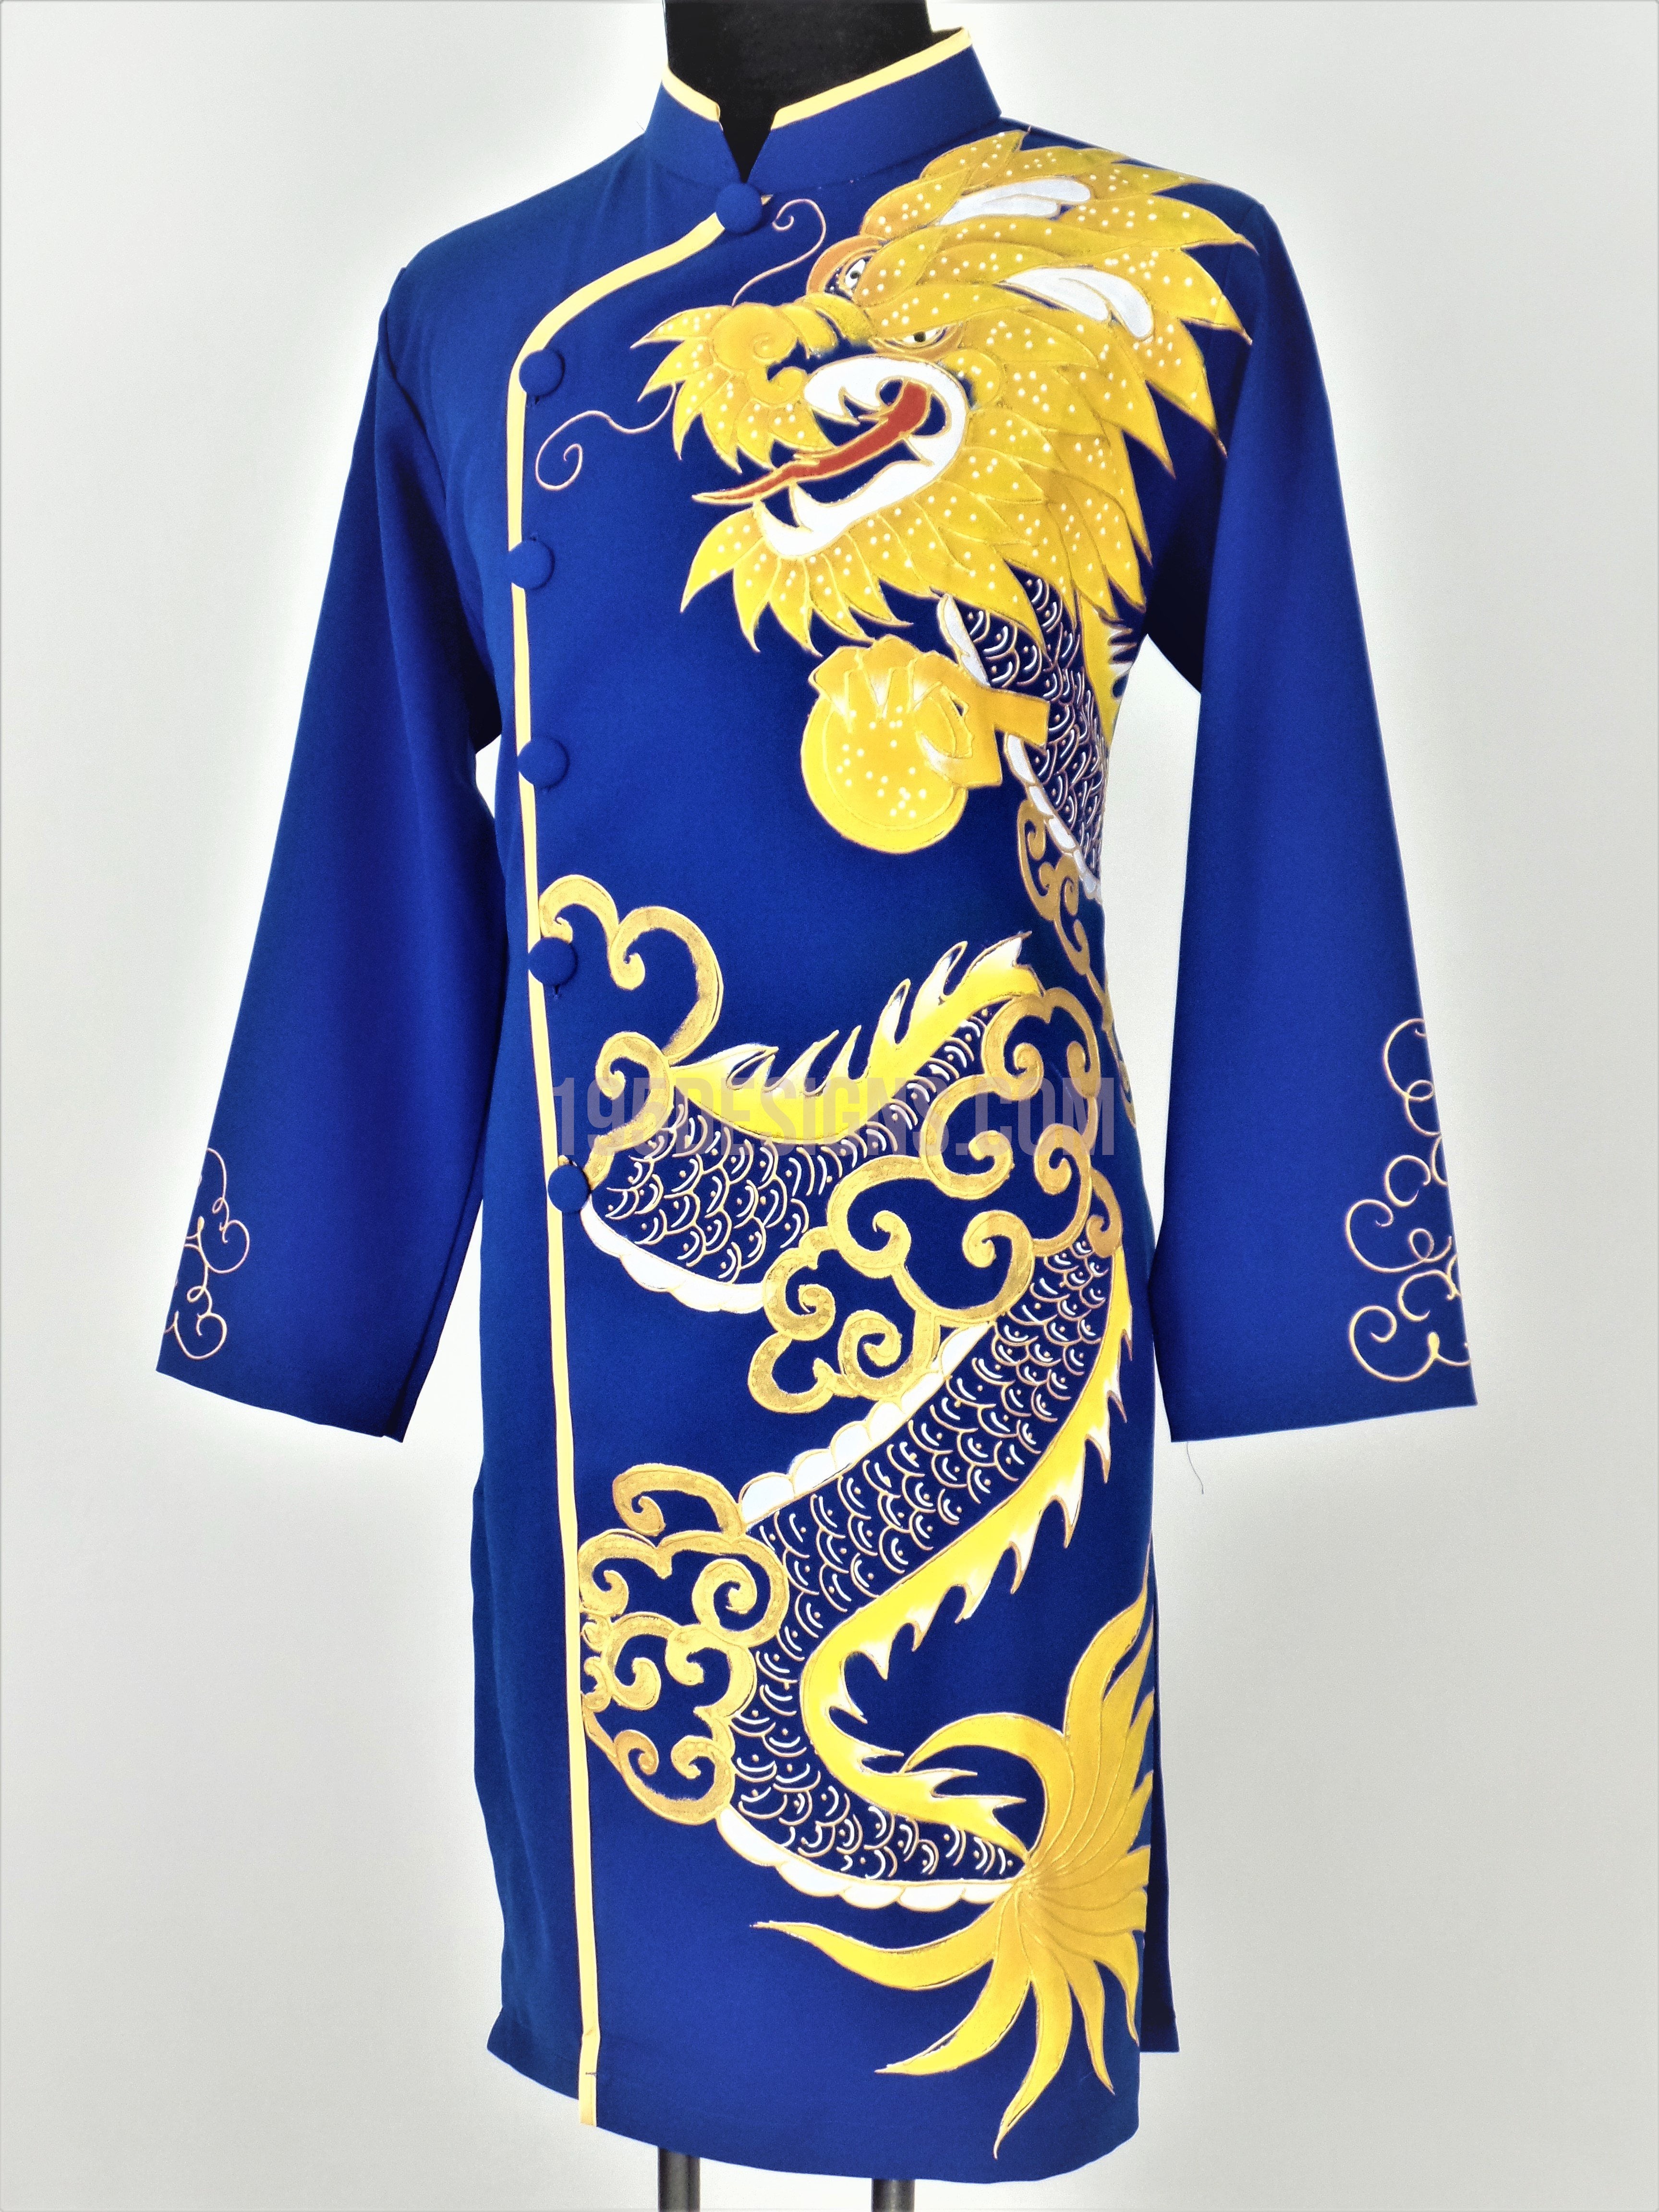 Áo Dài Xanh Nam Vẽ Rồng: Áo dài là trang phục truyền thống của người Việt Nam được yêu thích bởi sự độc đáo và thanh lịch. Hãy xem hình ảnh của chiếc áo dài xanh nam kết hợp với hình ảnh con rồng vẽ tinh xảo, bạn sẽ cảm thấy tự tin và thật xuất sắc khi mặc nó.